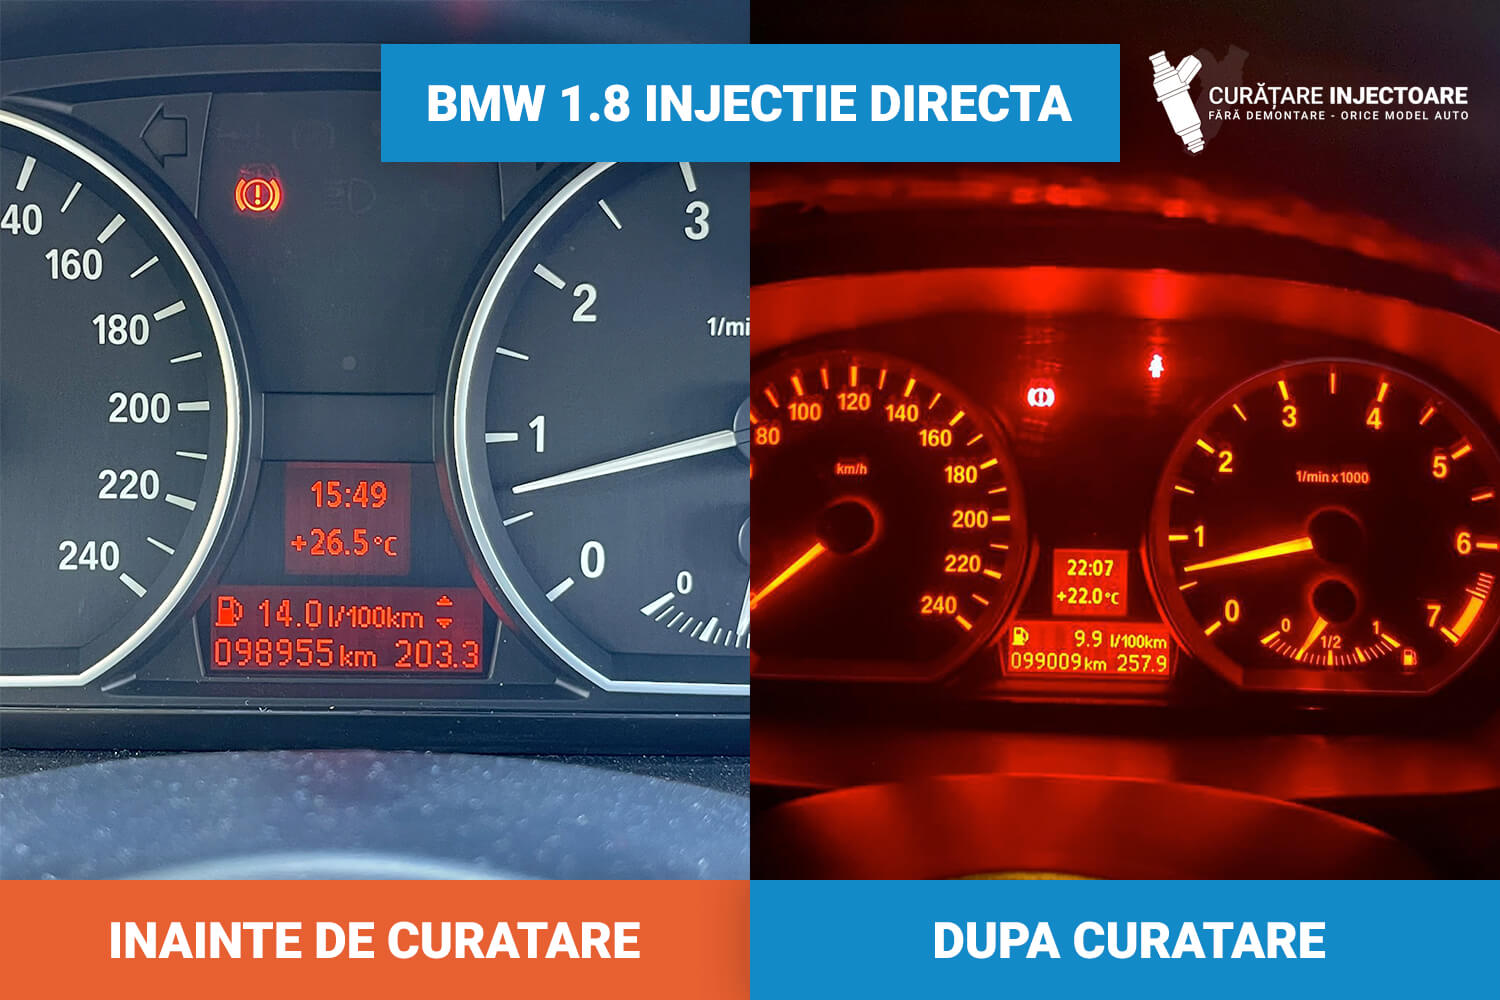 BMW 1.8 injectie directa